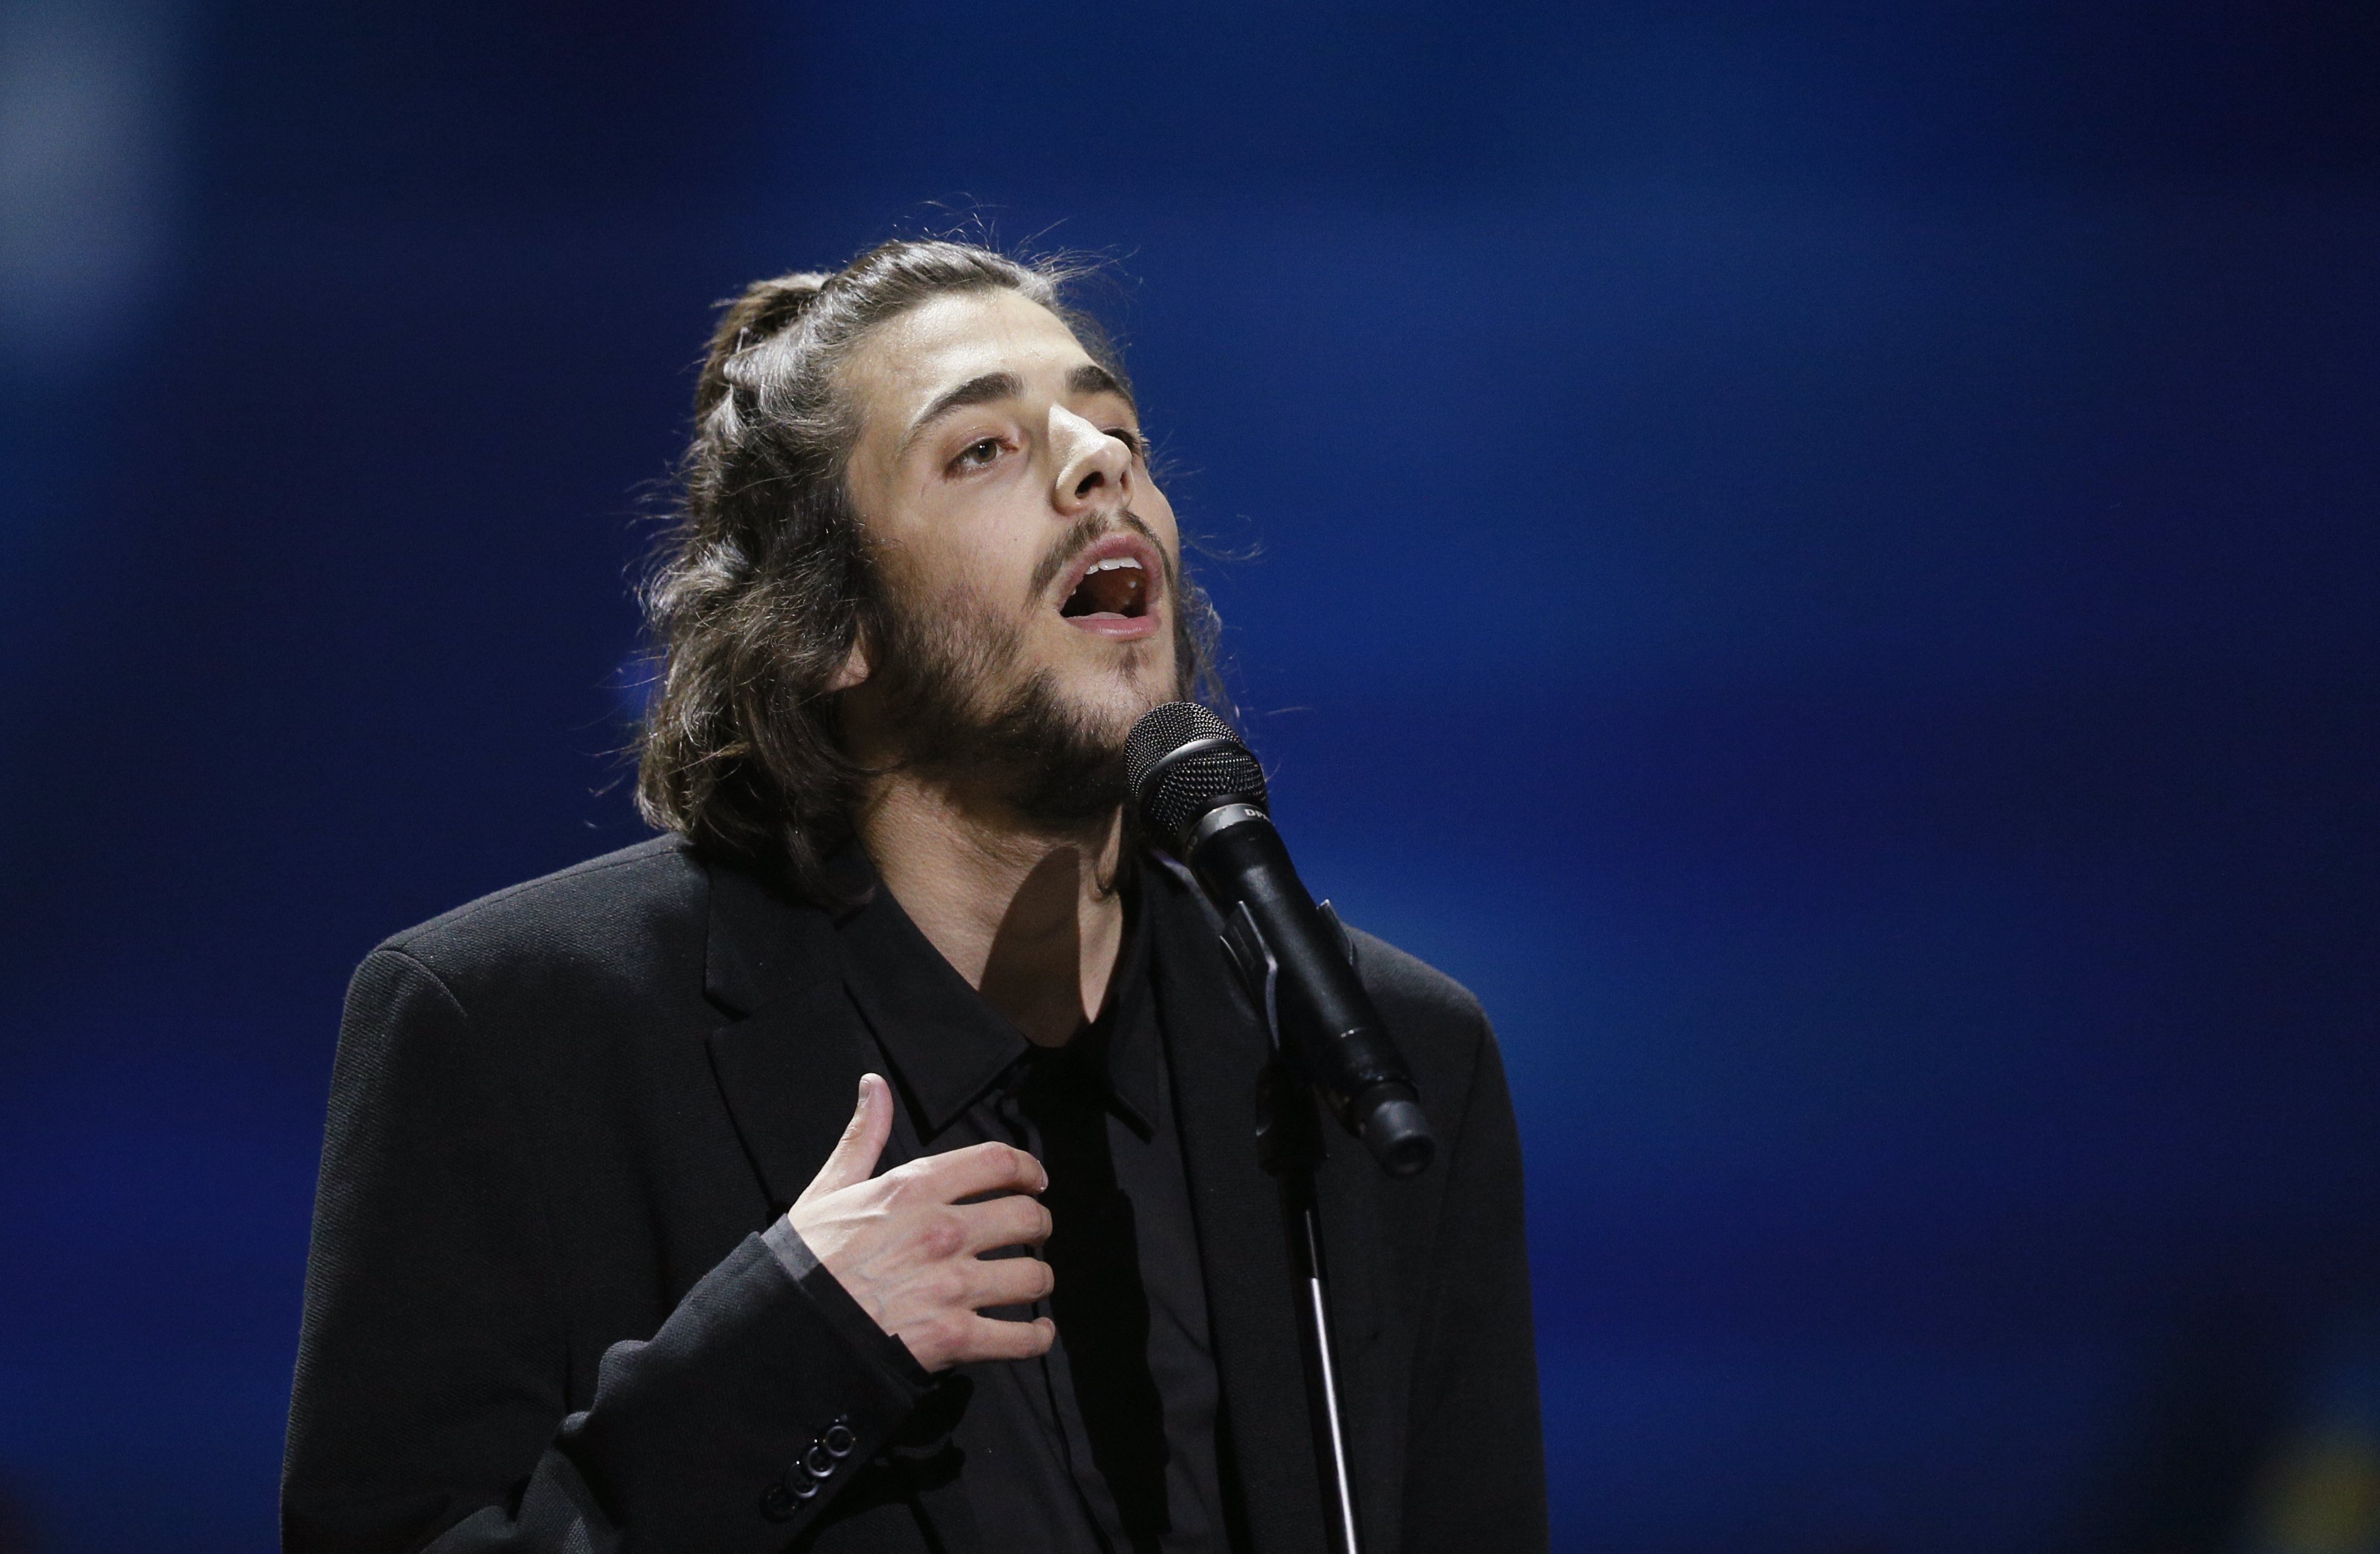 Portugal gana Eurovisión, España desafina y se hunde